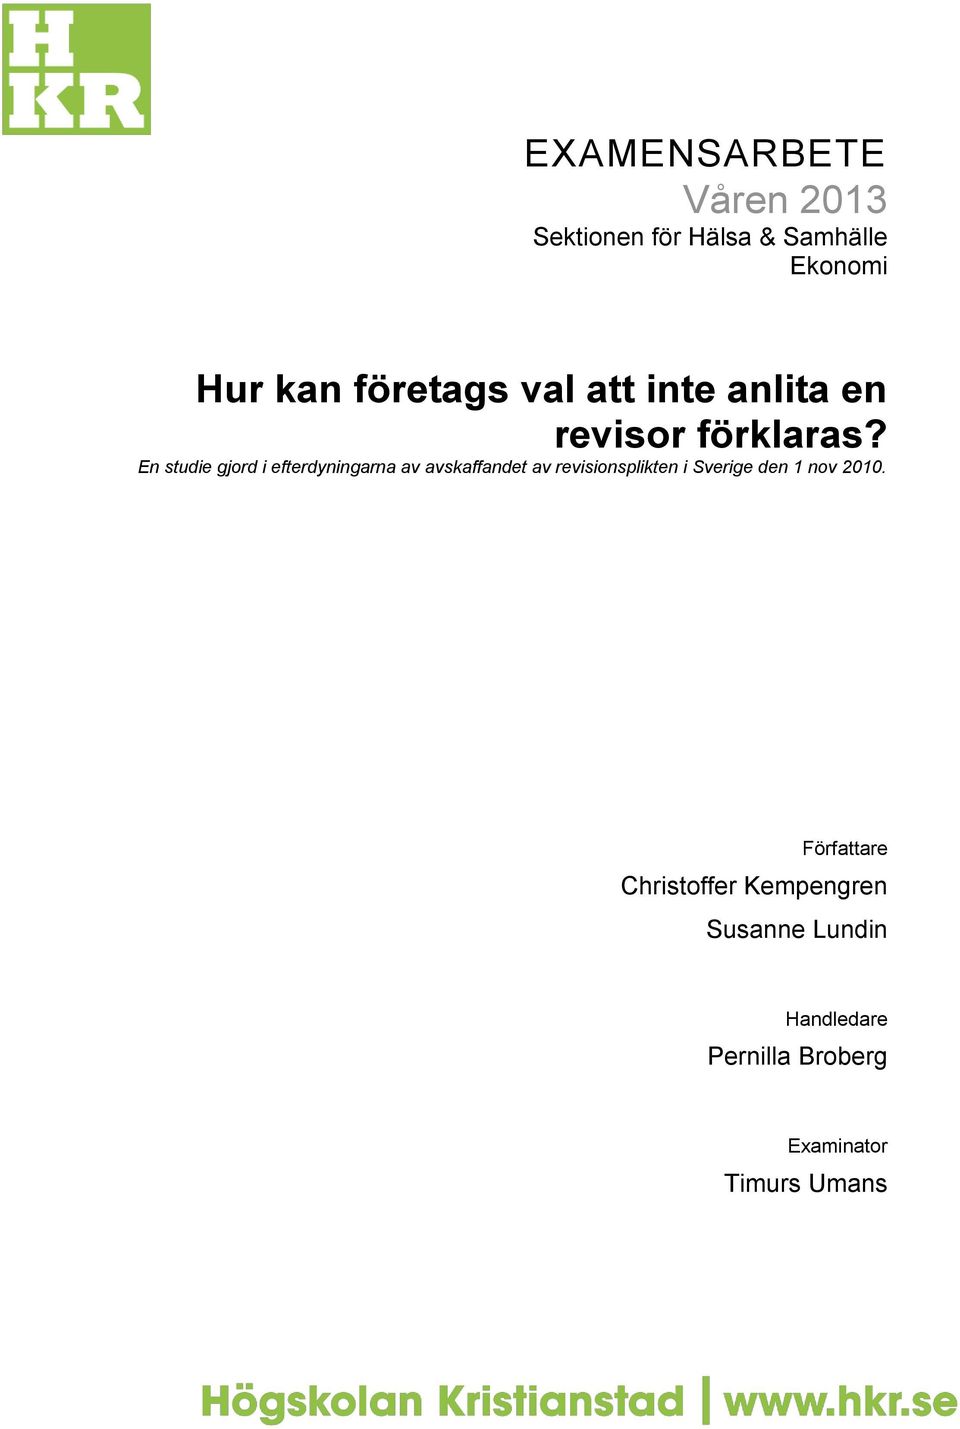 En studie gjord i efterdyningarna av avskaffandet av revisionsplikten i Sverige